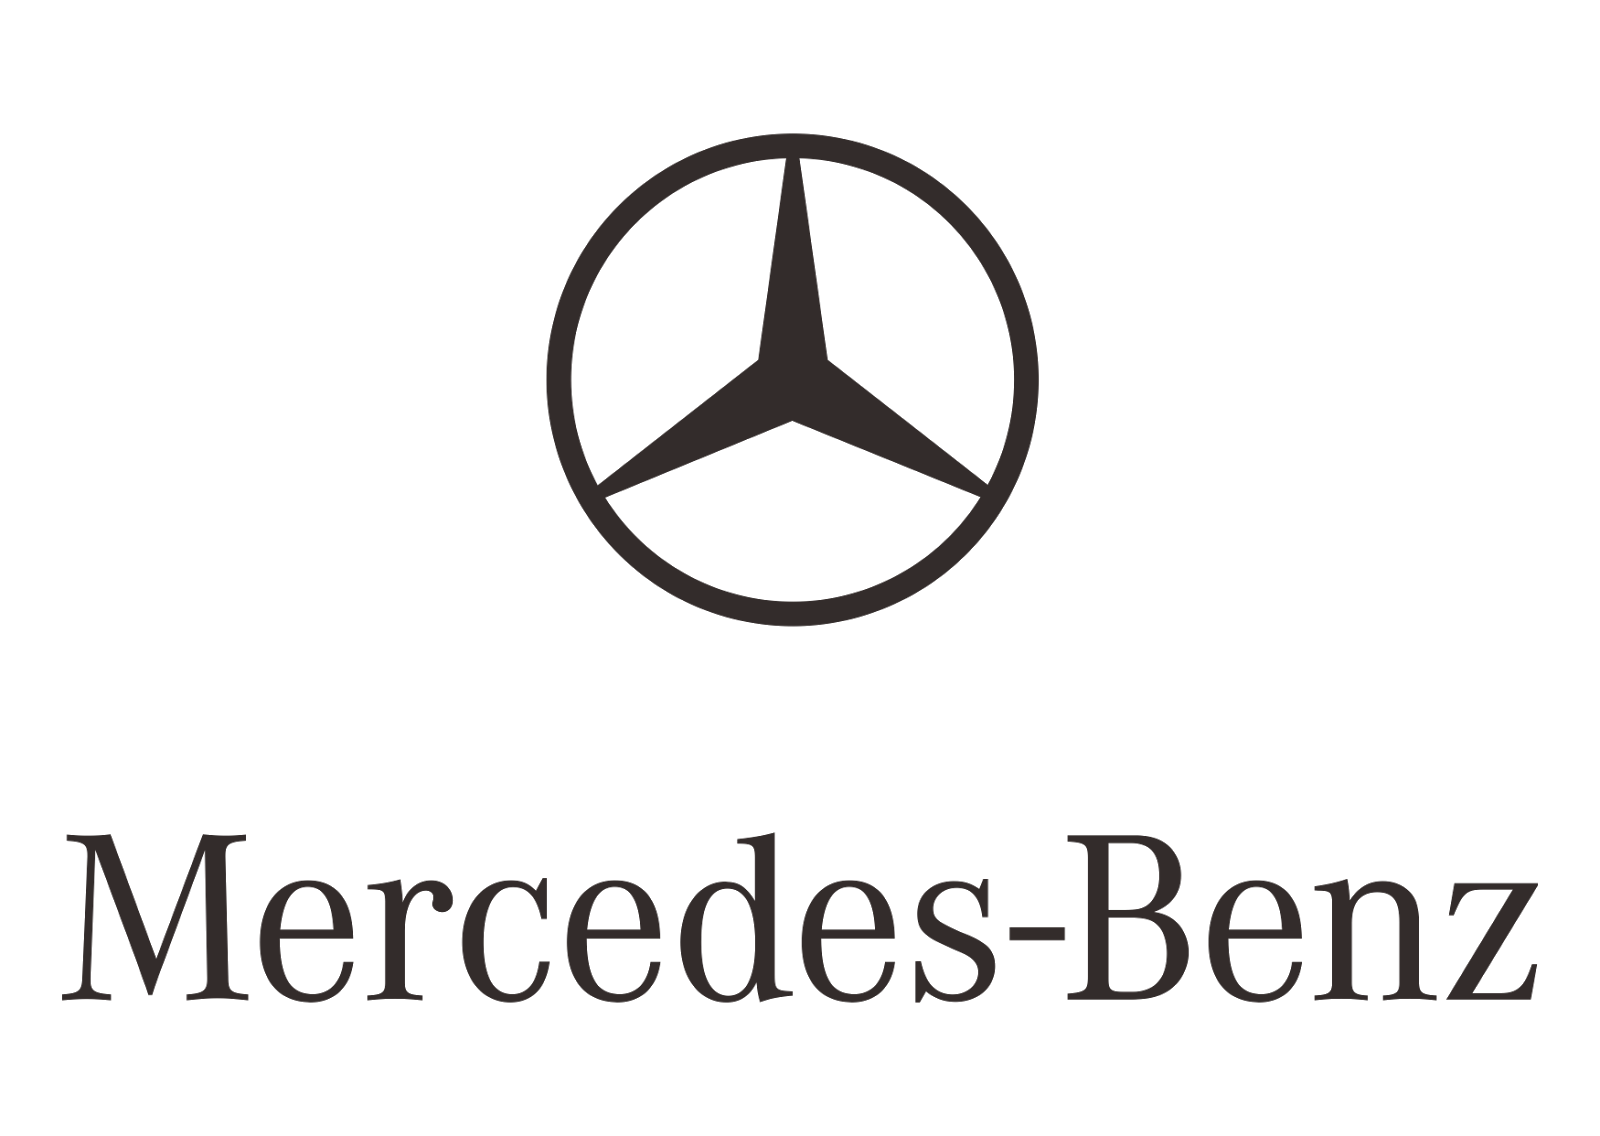 Download Mercedes-Benz Logo Transparent Image HQ PNG Image